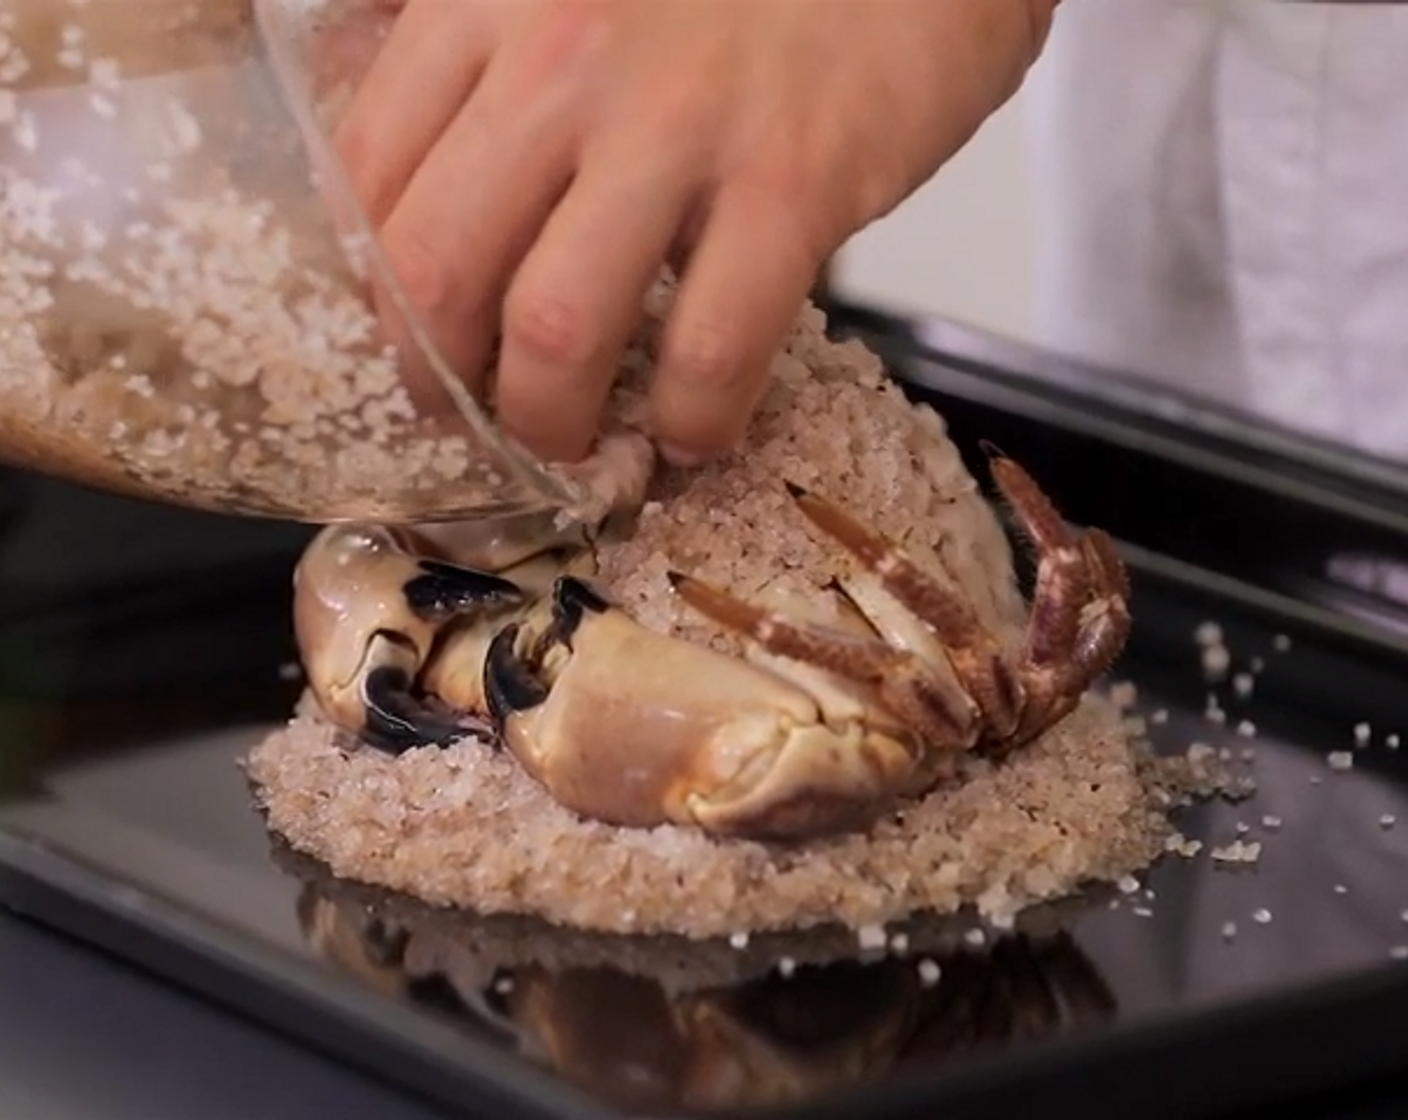 Schritt 3 In einer Schüssel das Salz, grobkörnig (1 kg) und Fünf-Gewürz-Pulver (1 TL) mischen. Dann das Wasser (600 ml) hinzufügen. Ein Viertel des gewürzten Salzes auf ein mit Backpapier belegtes Blech geben, in der Grösse der Krabbe verteilen und flach drücken. Krabbe mit der Bauchseite nach oben auf das Salz legen, mit dem restlichen Gewürzsalz bedecken und leicht andrücken.